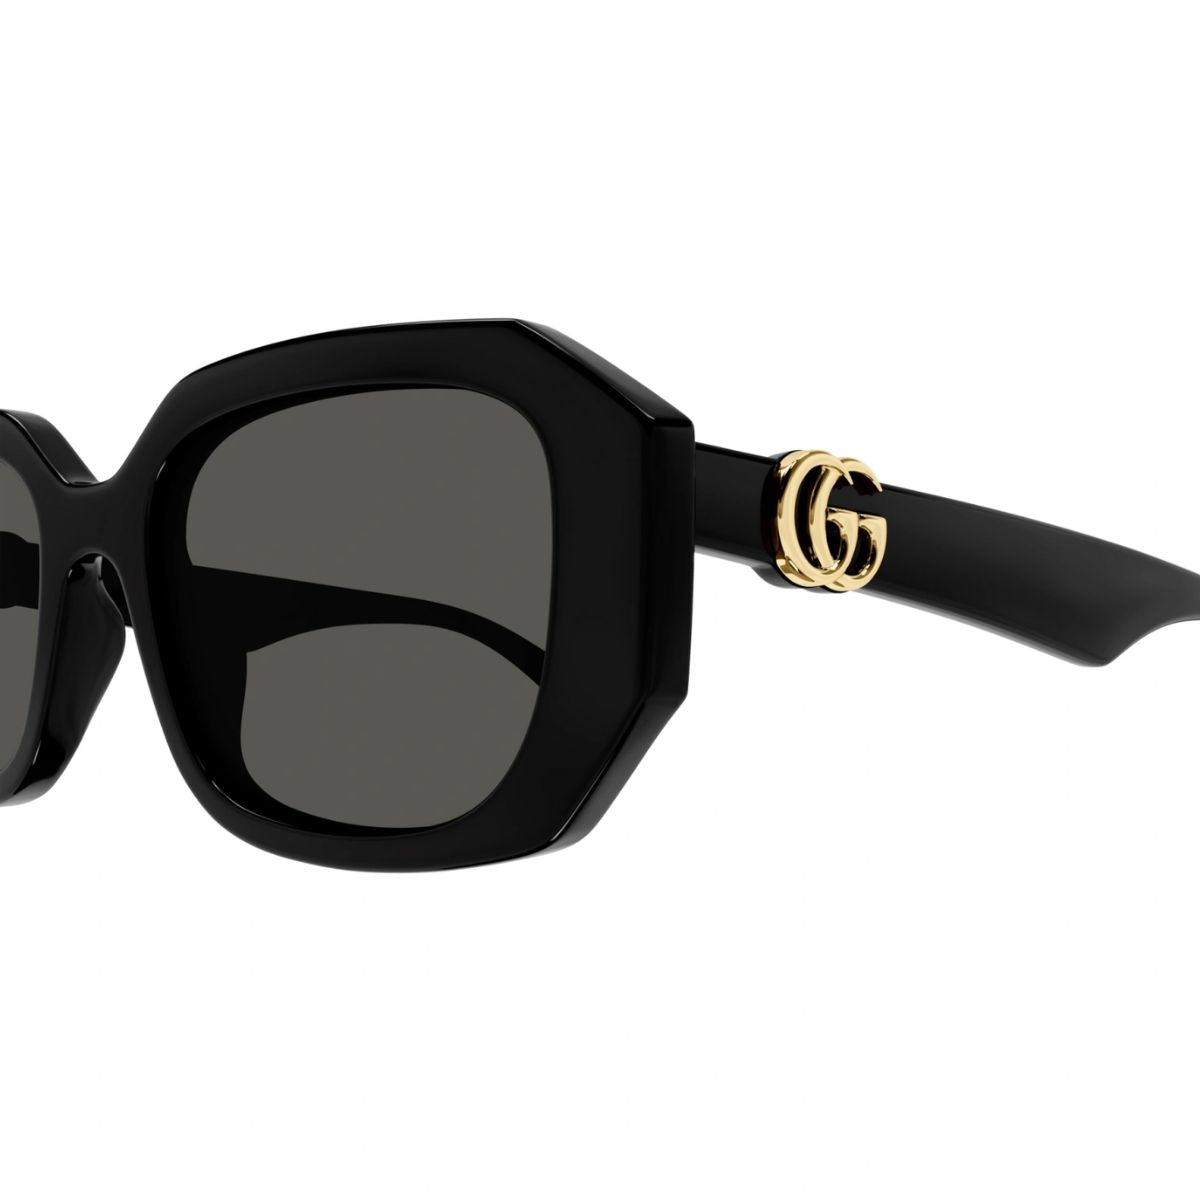 "Trendy Gucci Sunglasses for Women - GG1535S 001 Gucci Brand at optorium"